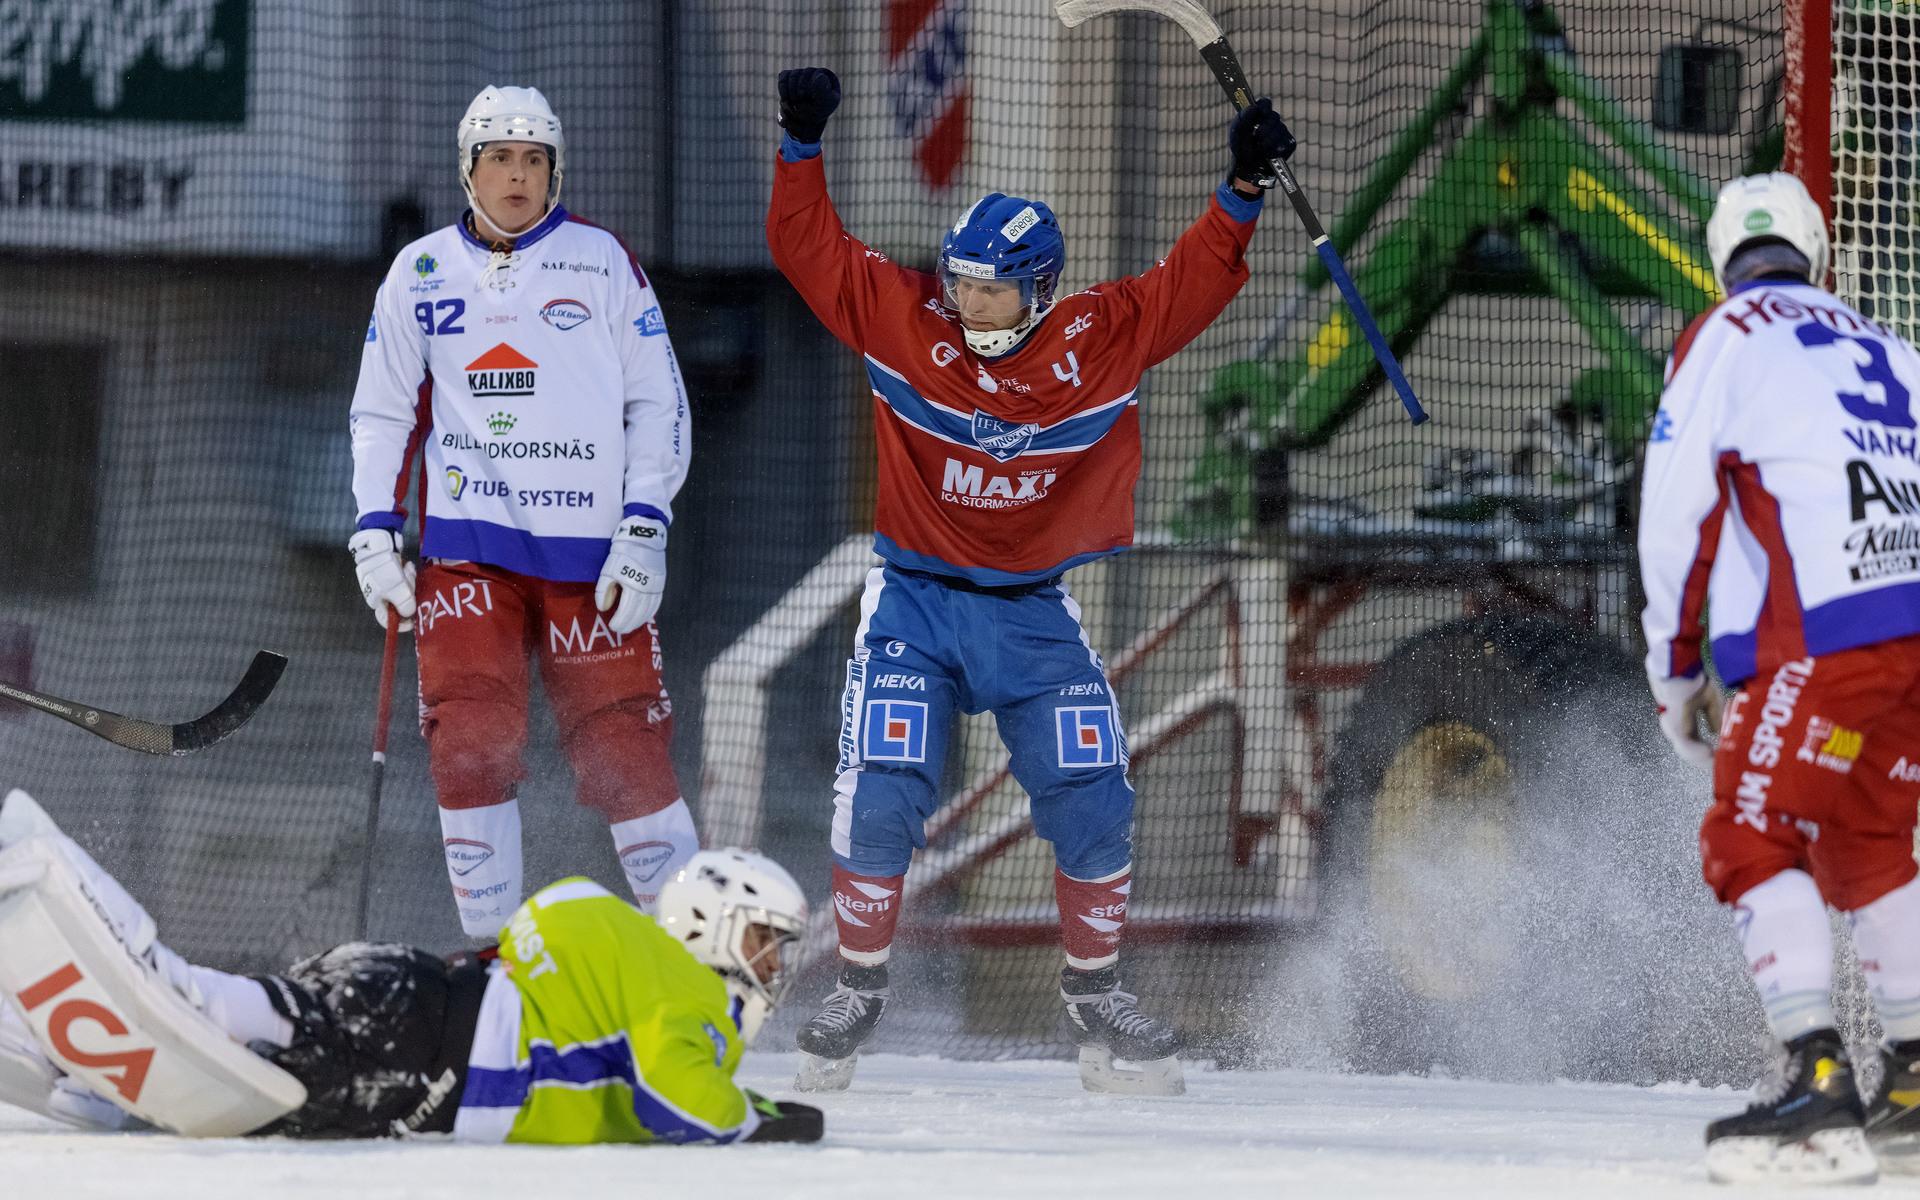 Patrik Sunnanängs jublar över sitt första IFK-mål på SKarpe nord på tio år.